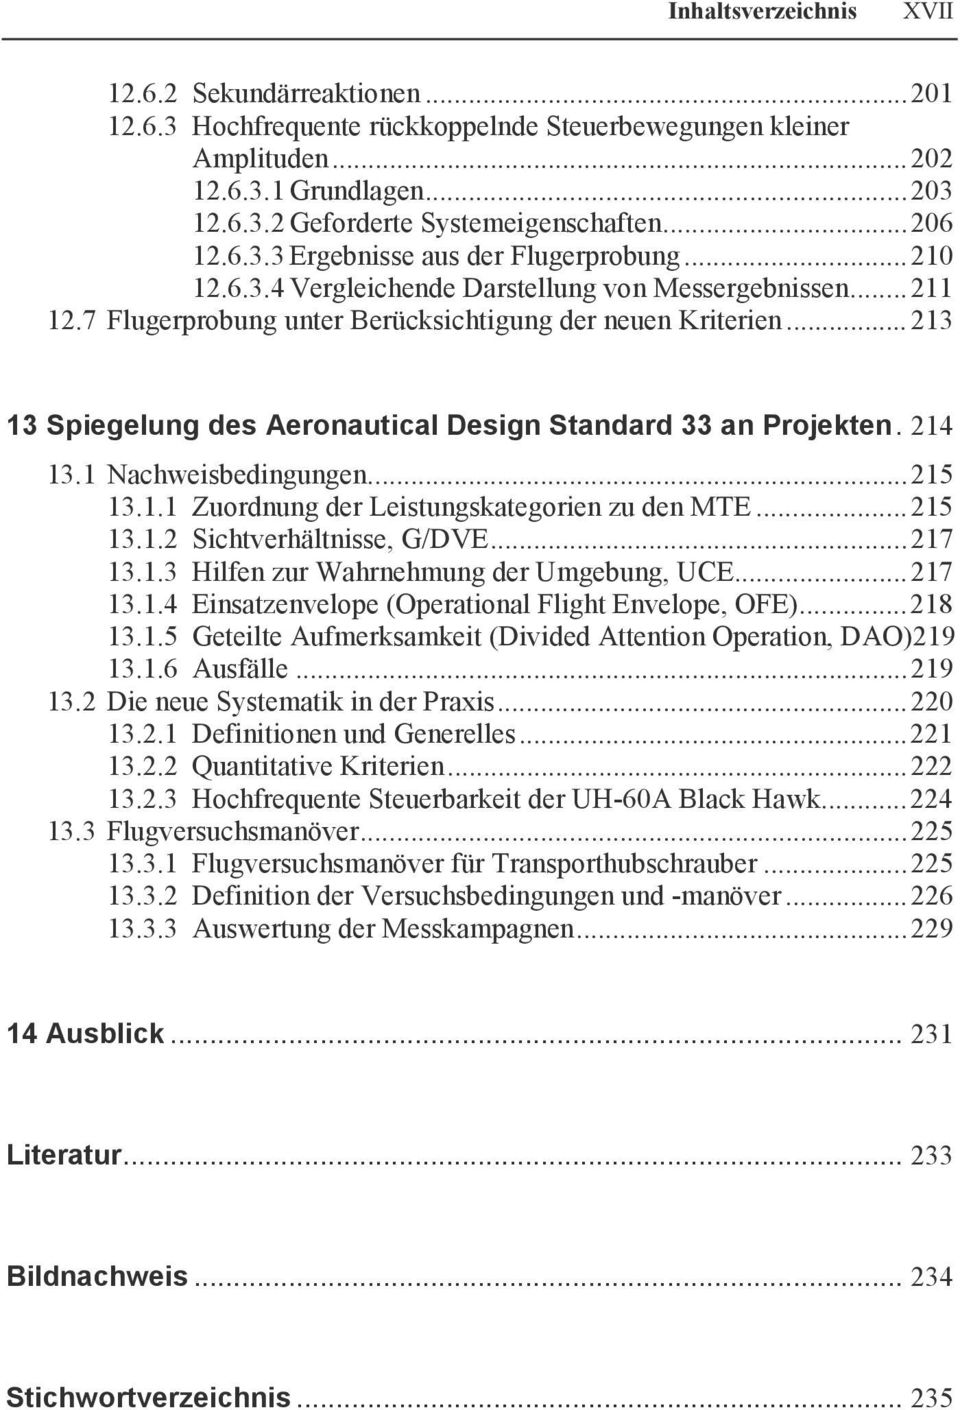 ..213 13 Spiegelung des Aeronautical Design Standard 33 an Projekten. 214 13.1 Nachweisbedingungen...215 13.1.1 Zuordnung der Leistungskategorien zu den MTE...215 13.1.2 Sichtverhältnisse, G/DVE.